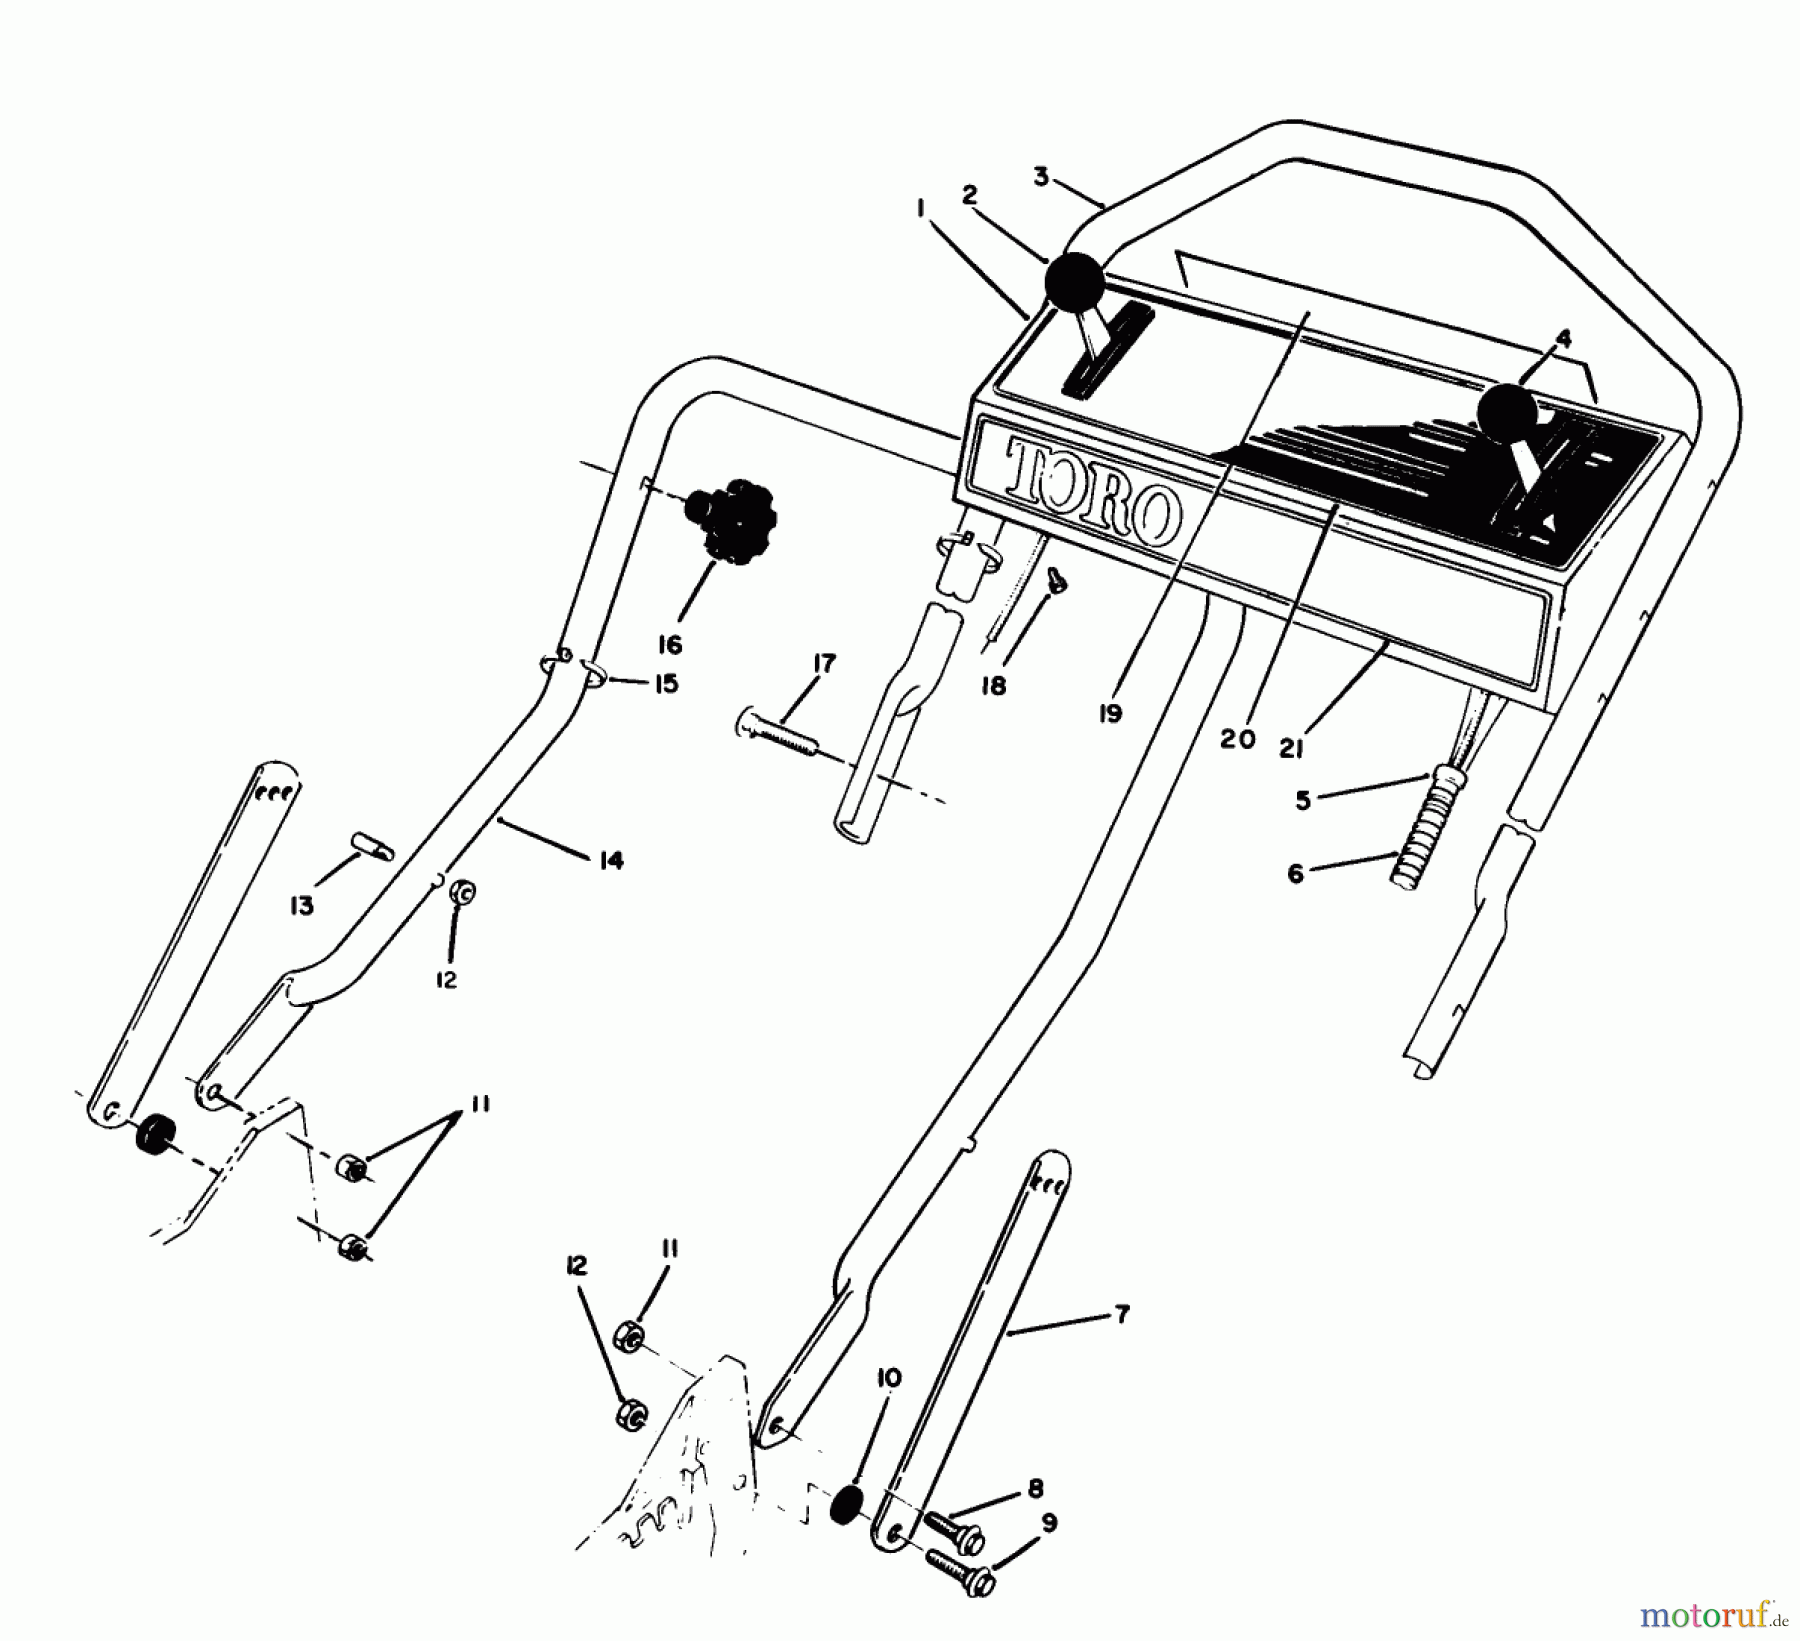  Toro Neu Mowers, Walk-Behind Seite 1 20622C - Toro Lawnmower, 1988 (8000001-8999999) HANDLE ASSEMBLY